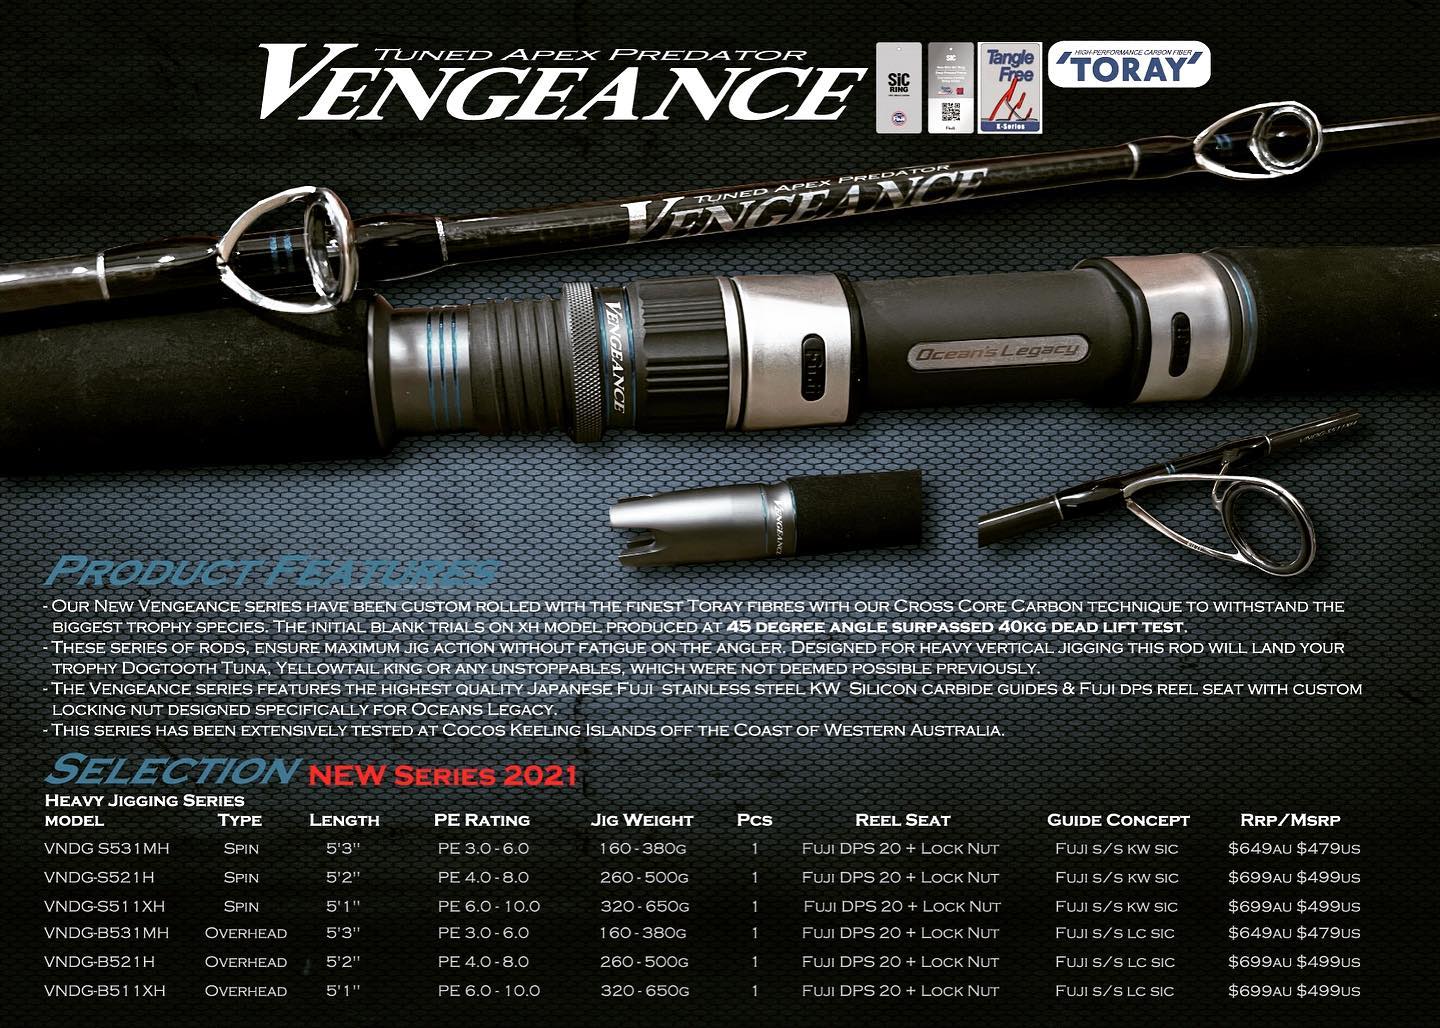 Oceans Legacy Vengence Apex Predator Overhead Rod